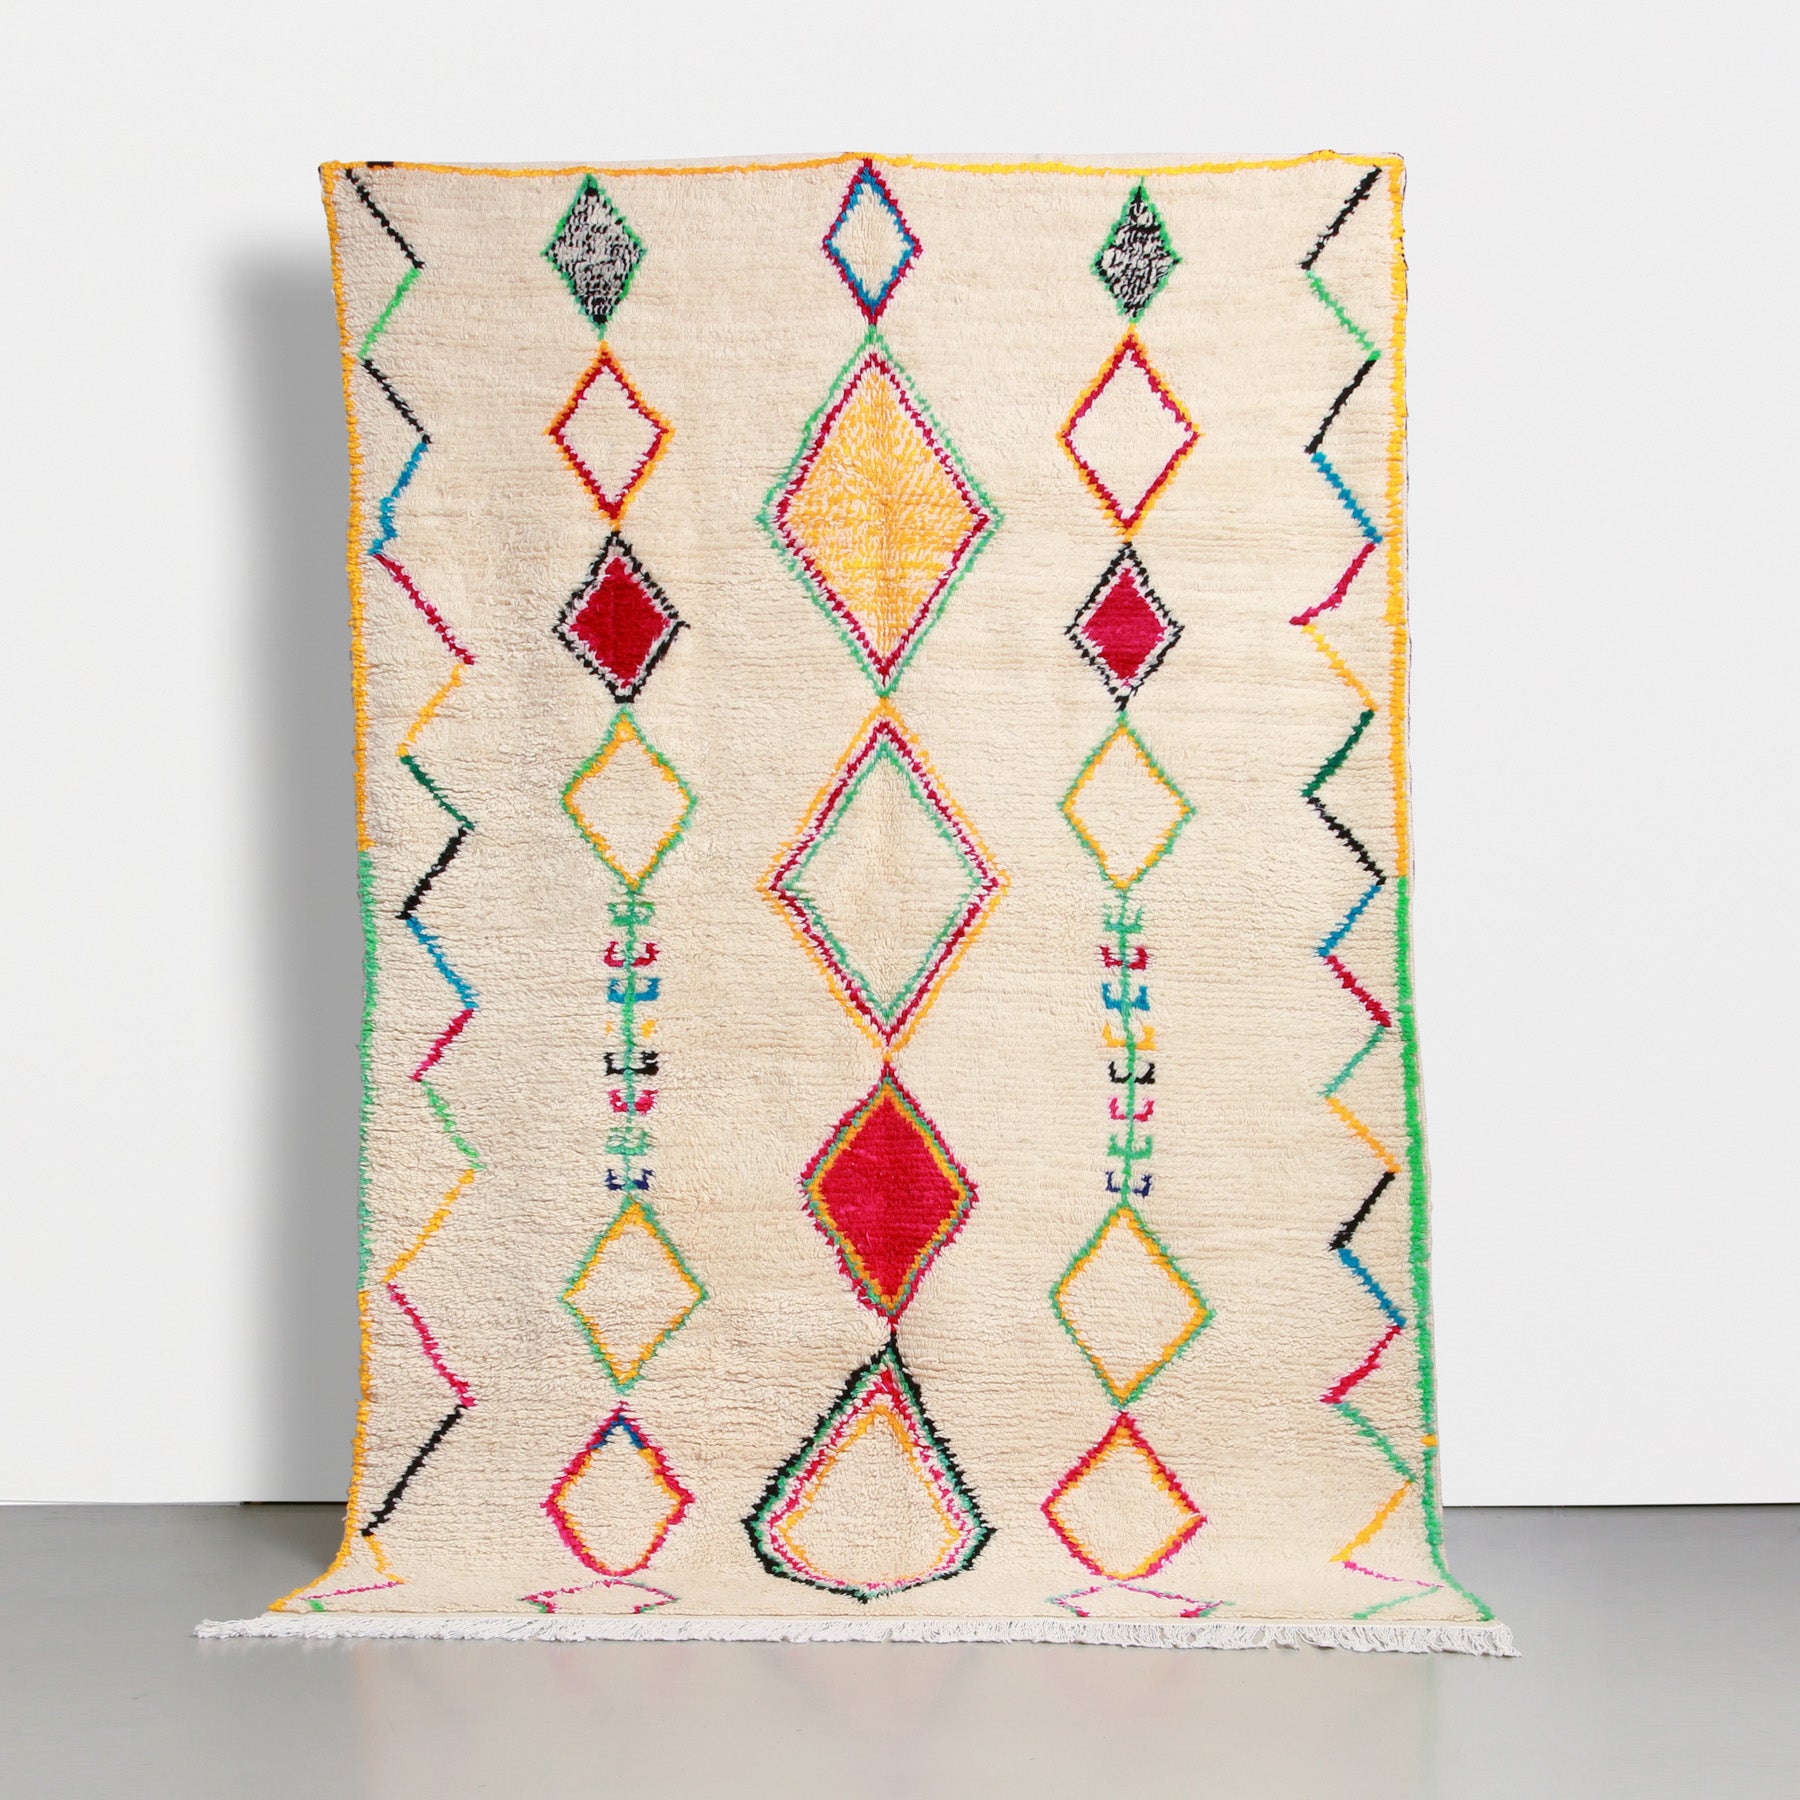 tappeto marocchino azilal realizzato a mano con lana color panna e simboli amazigh dai colori sgarguianti. ci sono 3 righe verticali di rombi e una cornice a zig zag